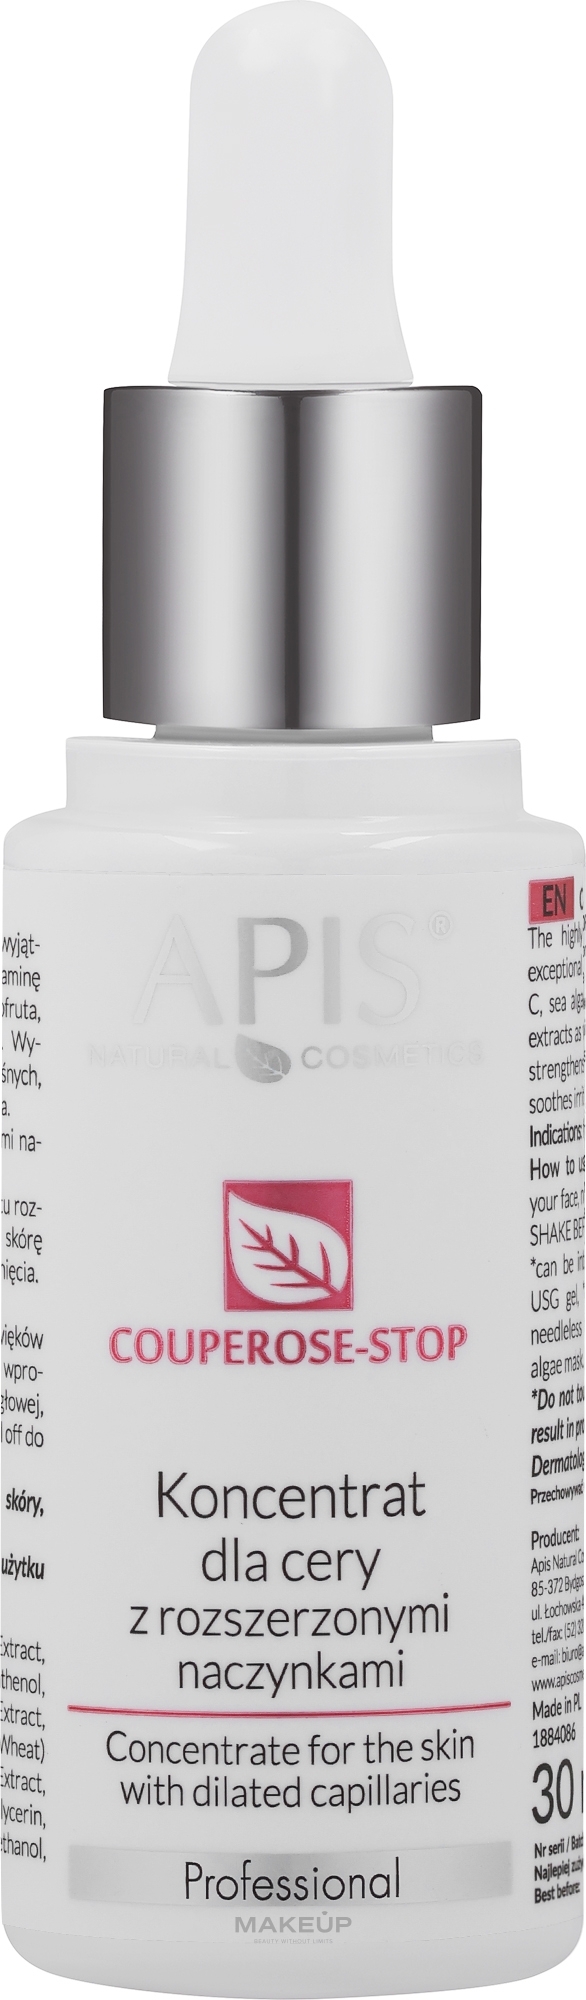 Koncentrat do cery z rozszerzonymi naczynkami - APIS Professional Couperose-Stop  — Zdjęcie 30 ml